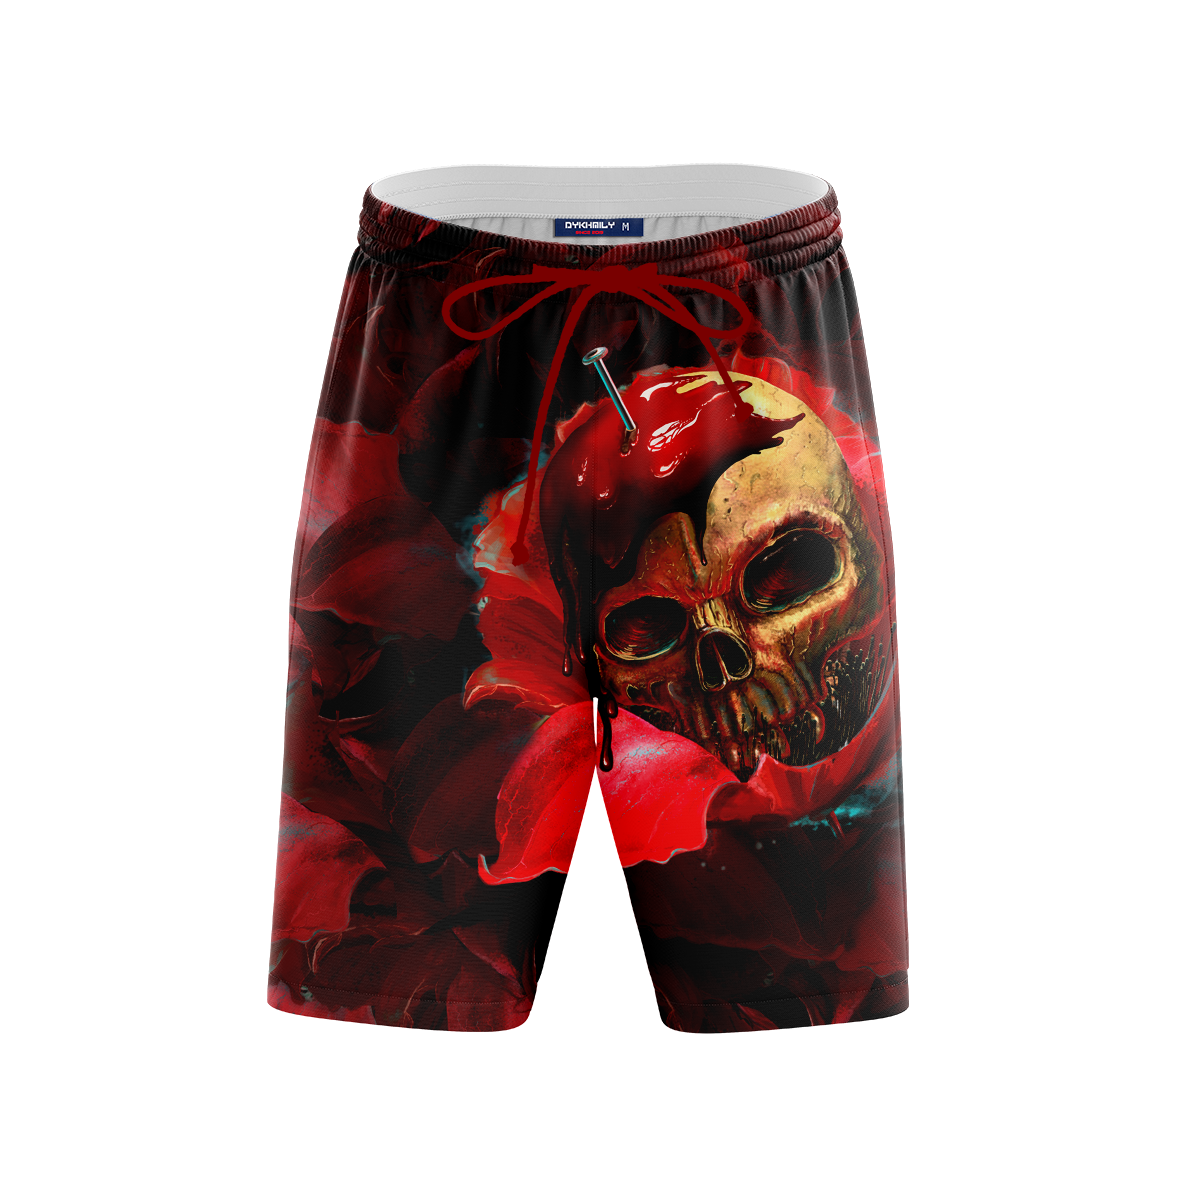 Skull In Red Beach Shorts Short